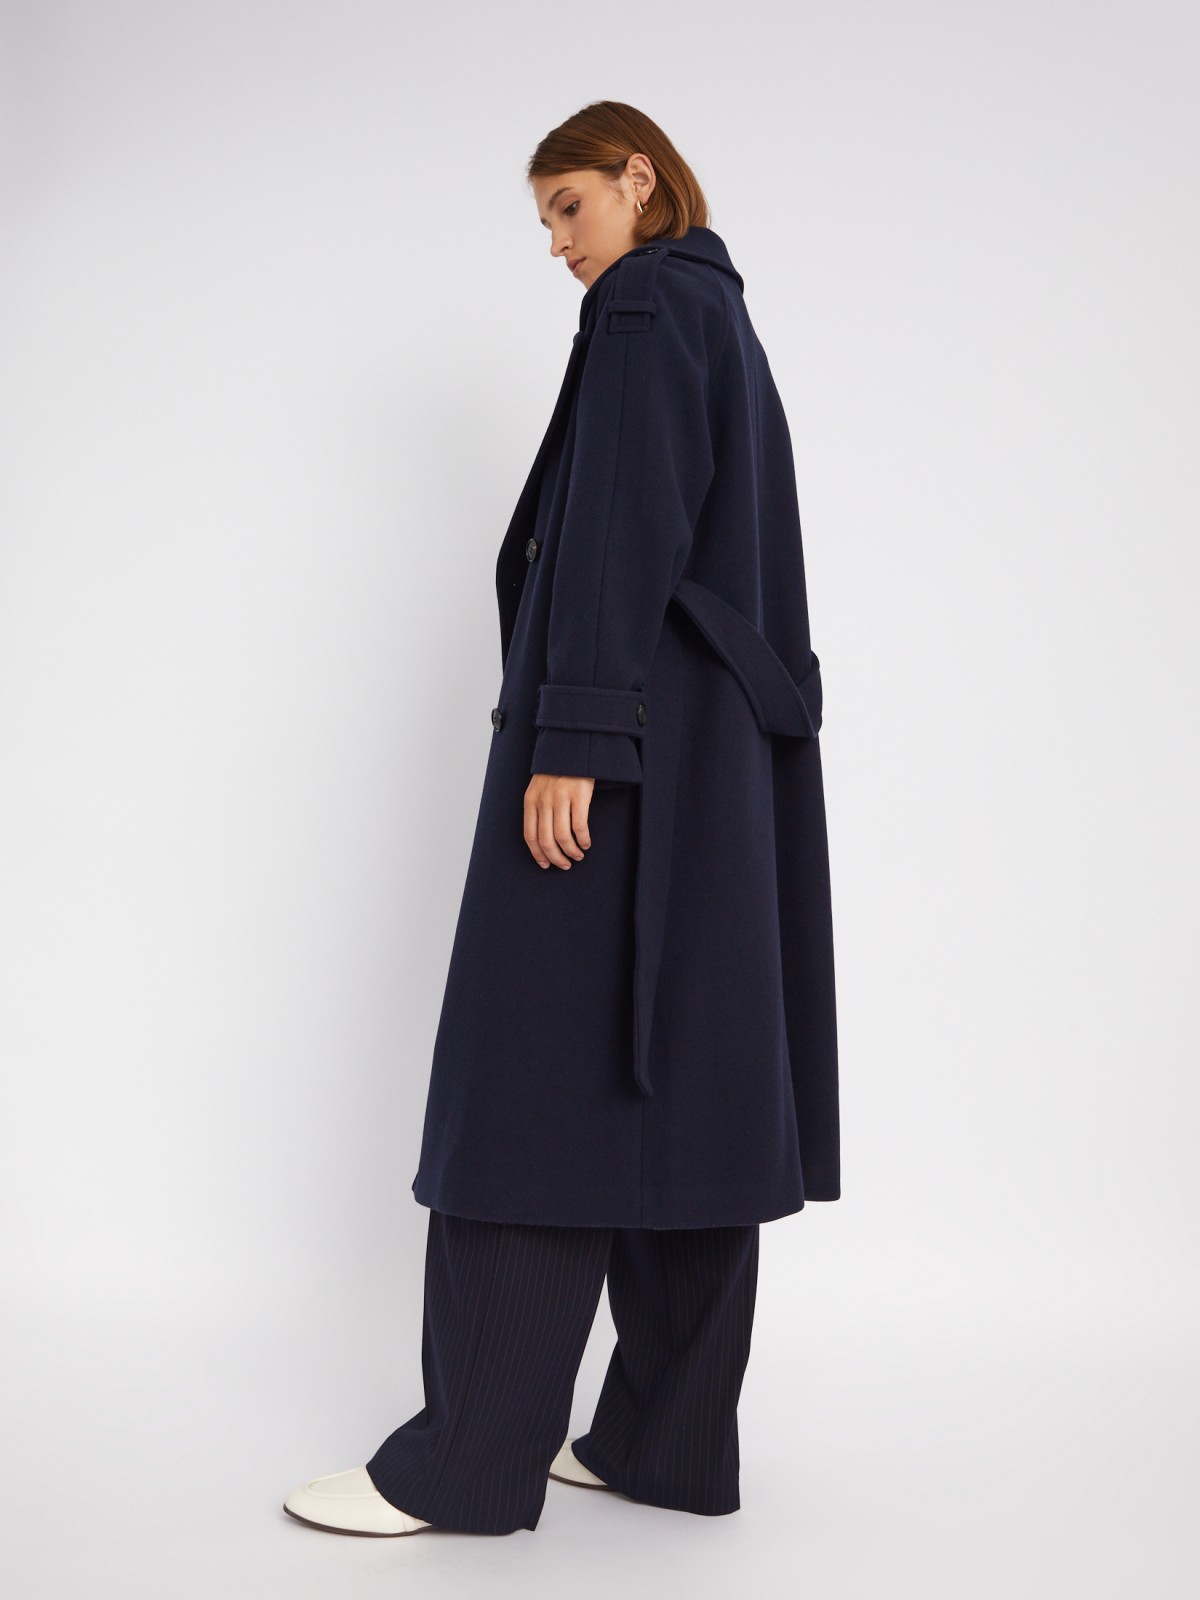 Длинное пальто-тренч без утеплителя на пуговицах с рукавами реглан и поясом zolla 023335866114, цвет синий, размер S - фото 3